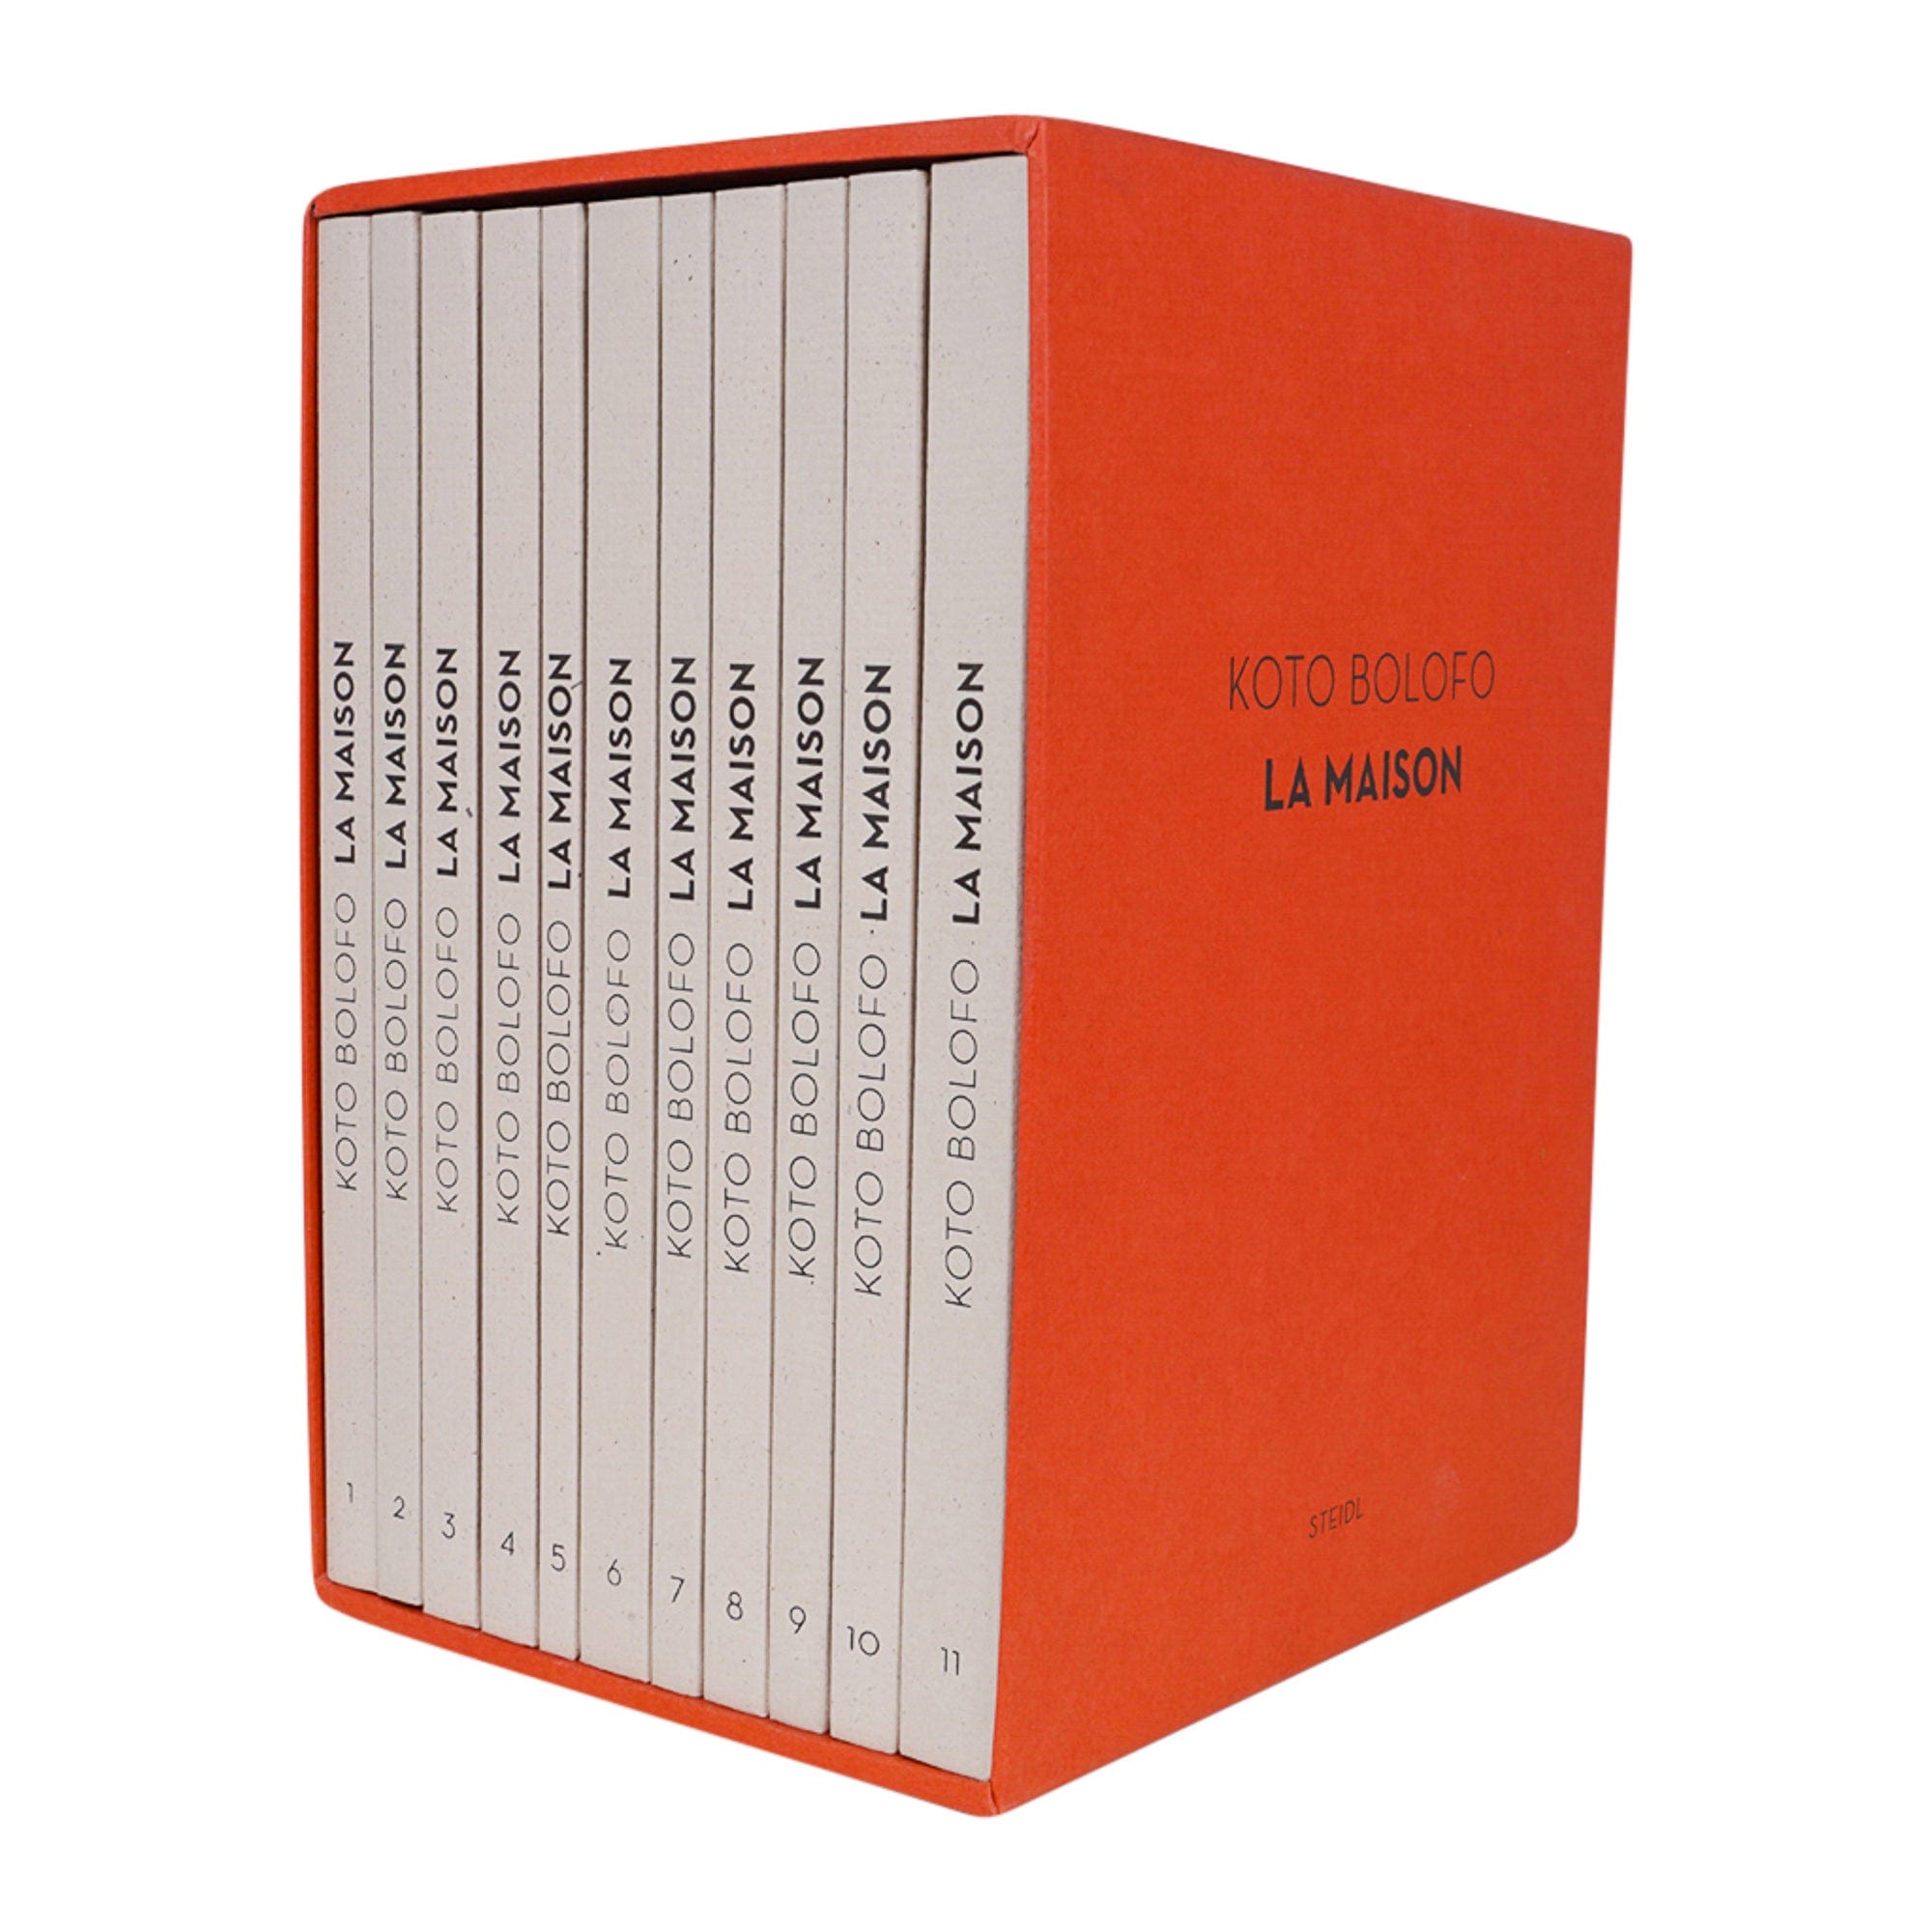 Hermes La Maison by Koto Bolofo Complete 11 Vol. Set